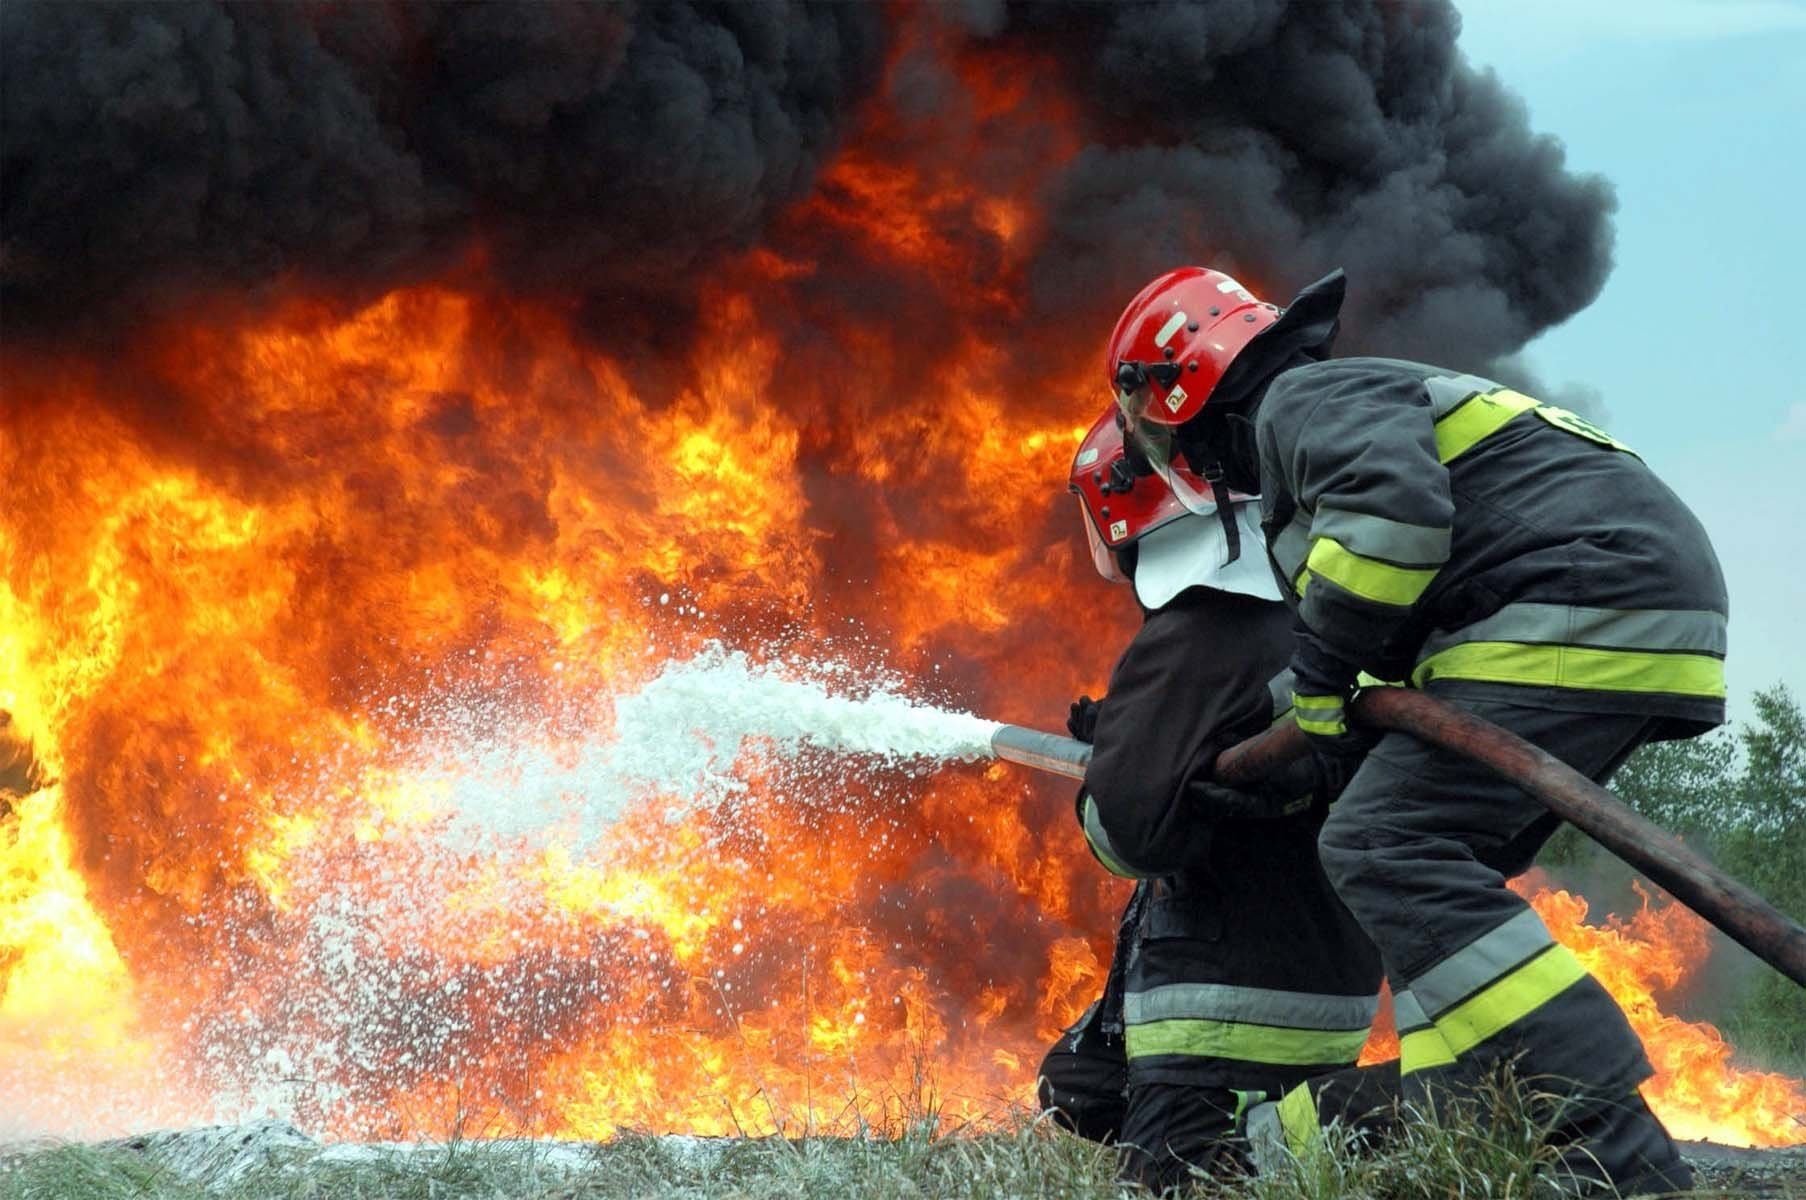 Пожар в Киеве: жуткие подробности пожара - 3 погибших